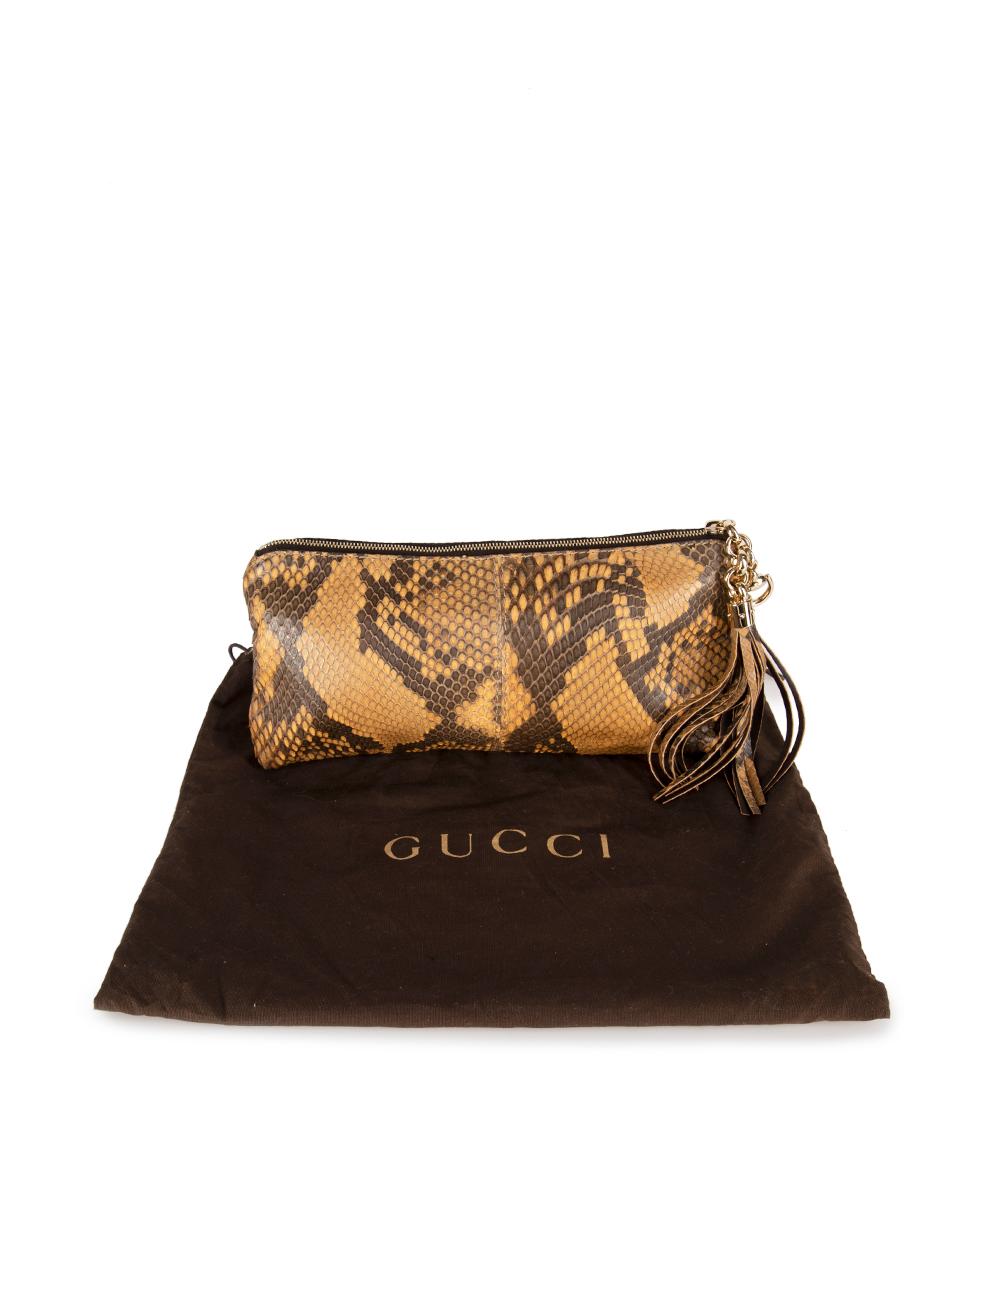 Gucci Women's Brown Snakeskin Tassel Accent Clutch 3